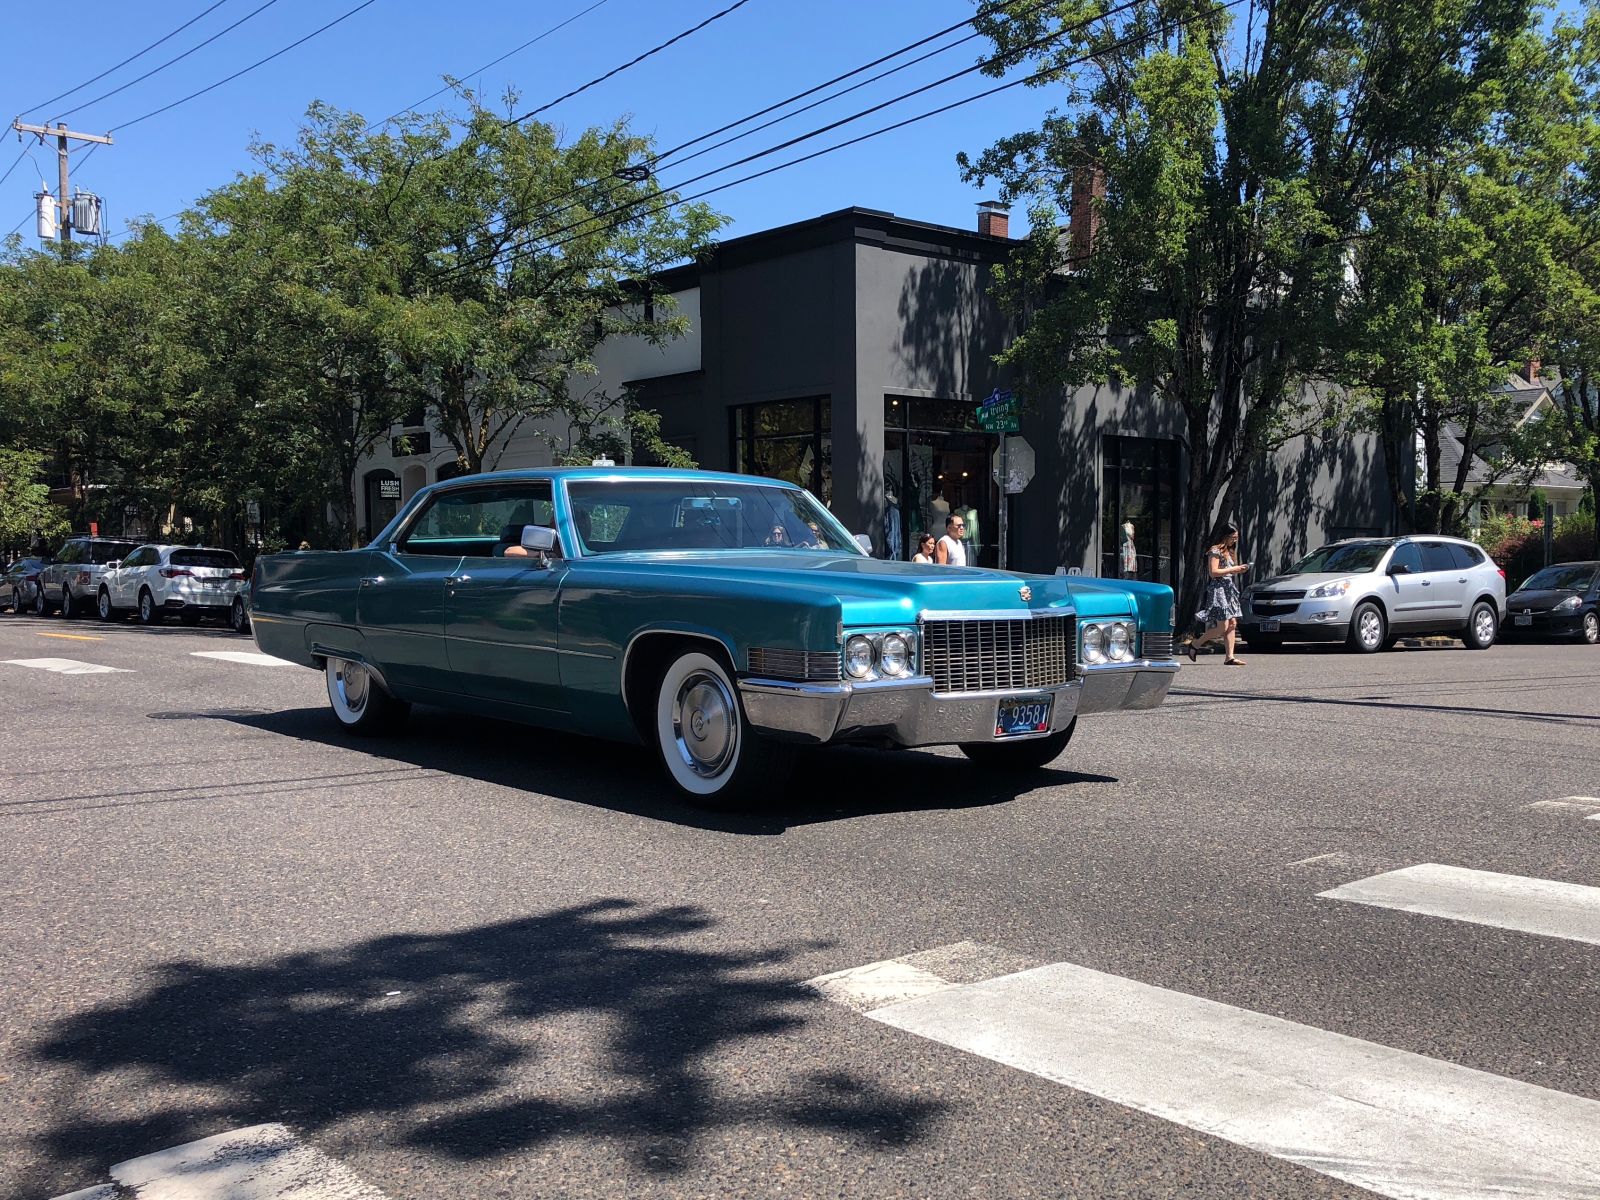 Another 23rd Street spot, a 1970 Cadillac Sedan de Ville.